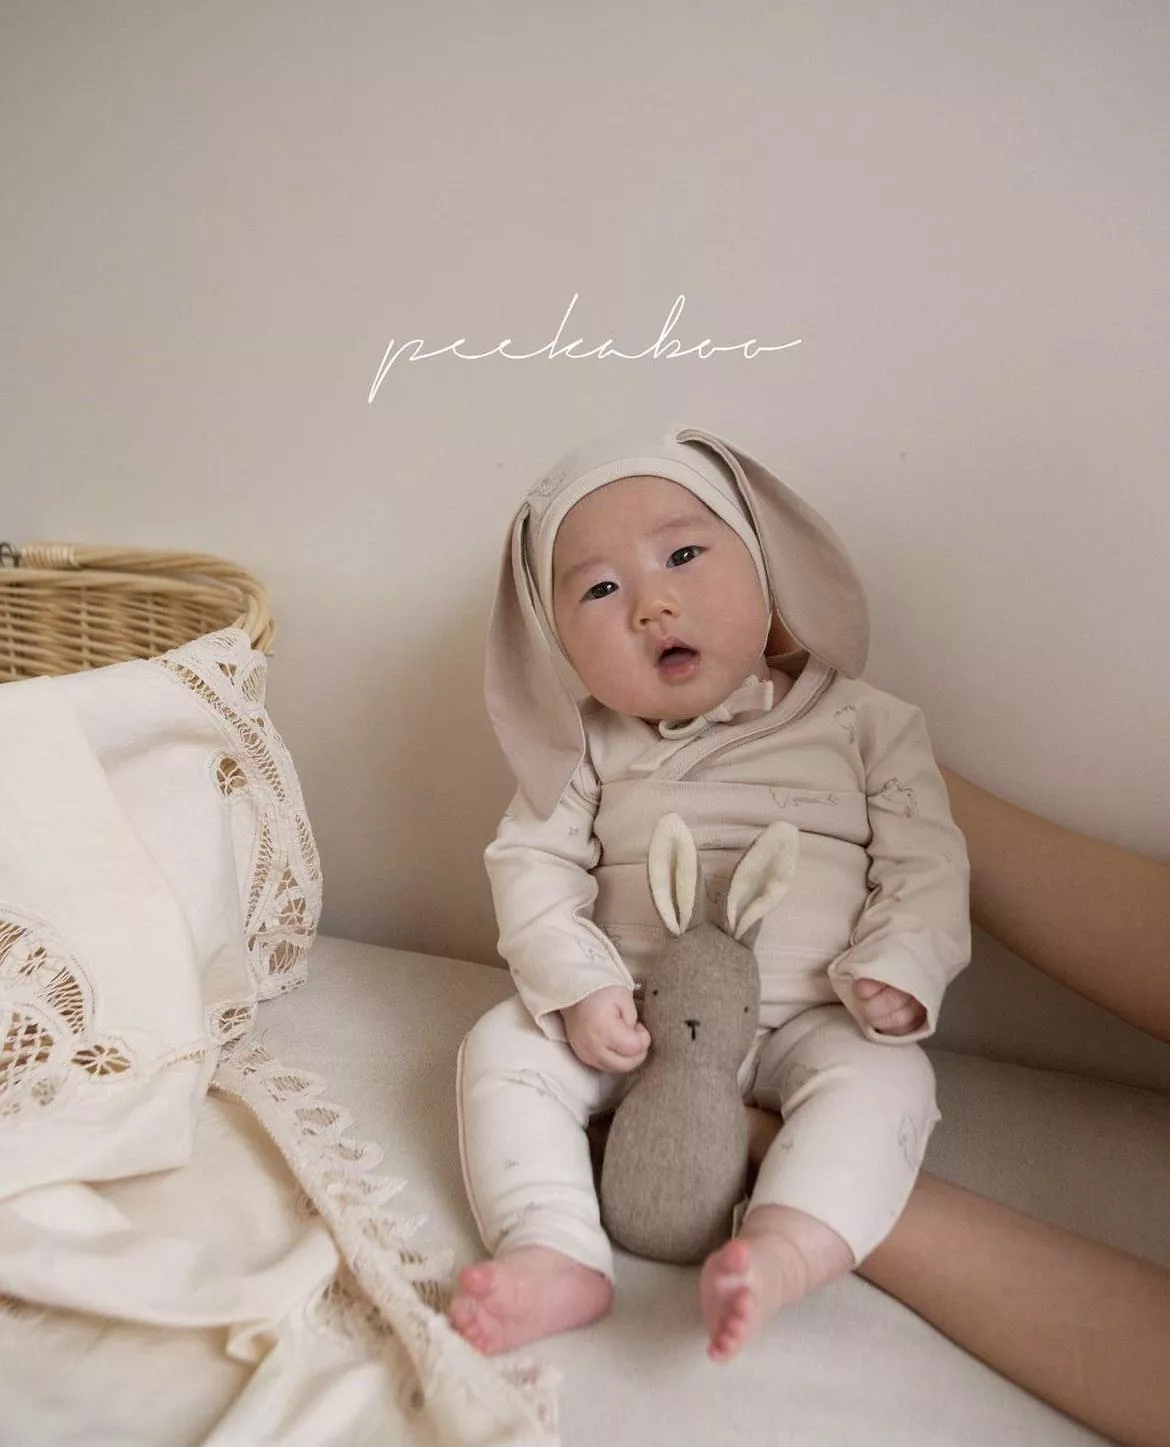 Peekaboo新生兒⍣兔兔套裝(0-3m)